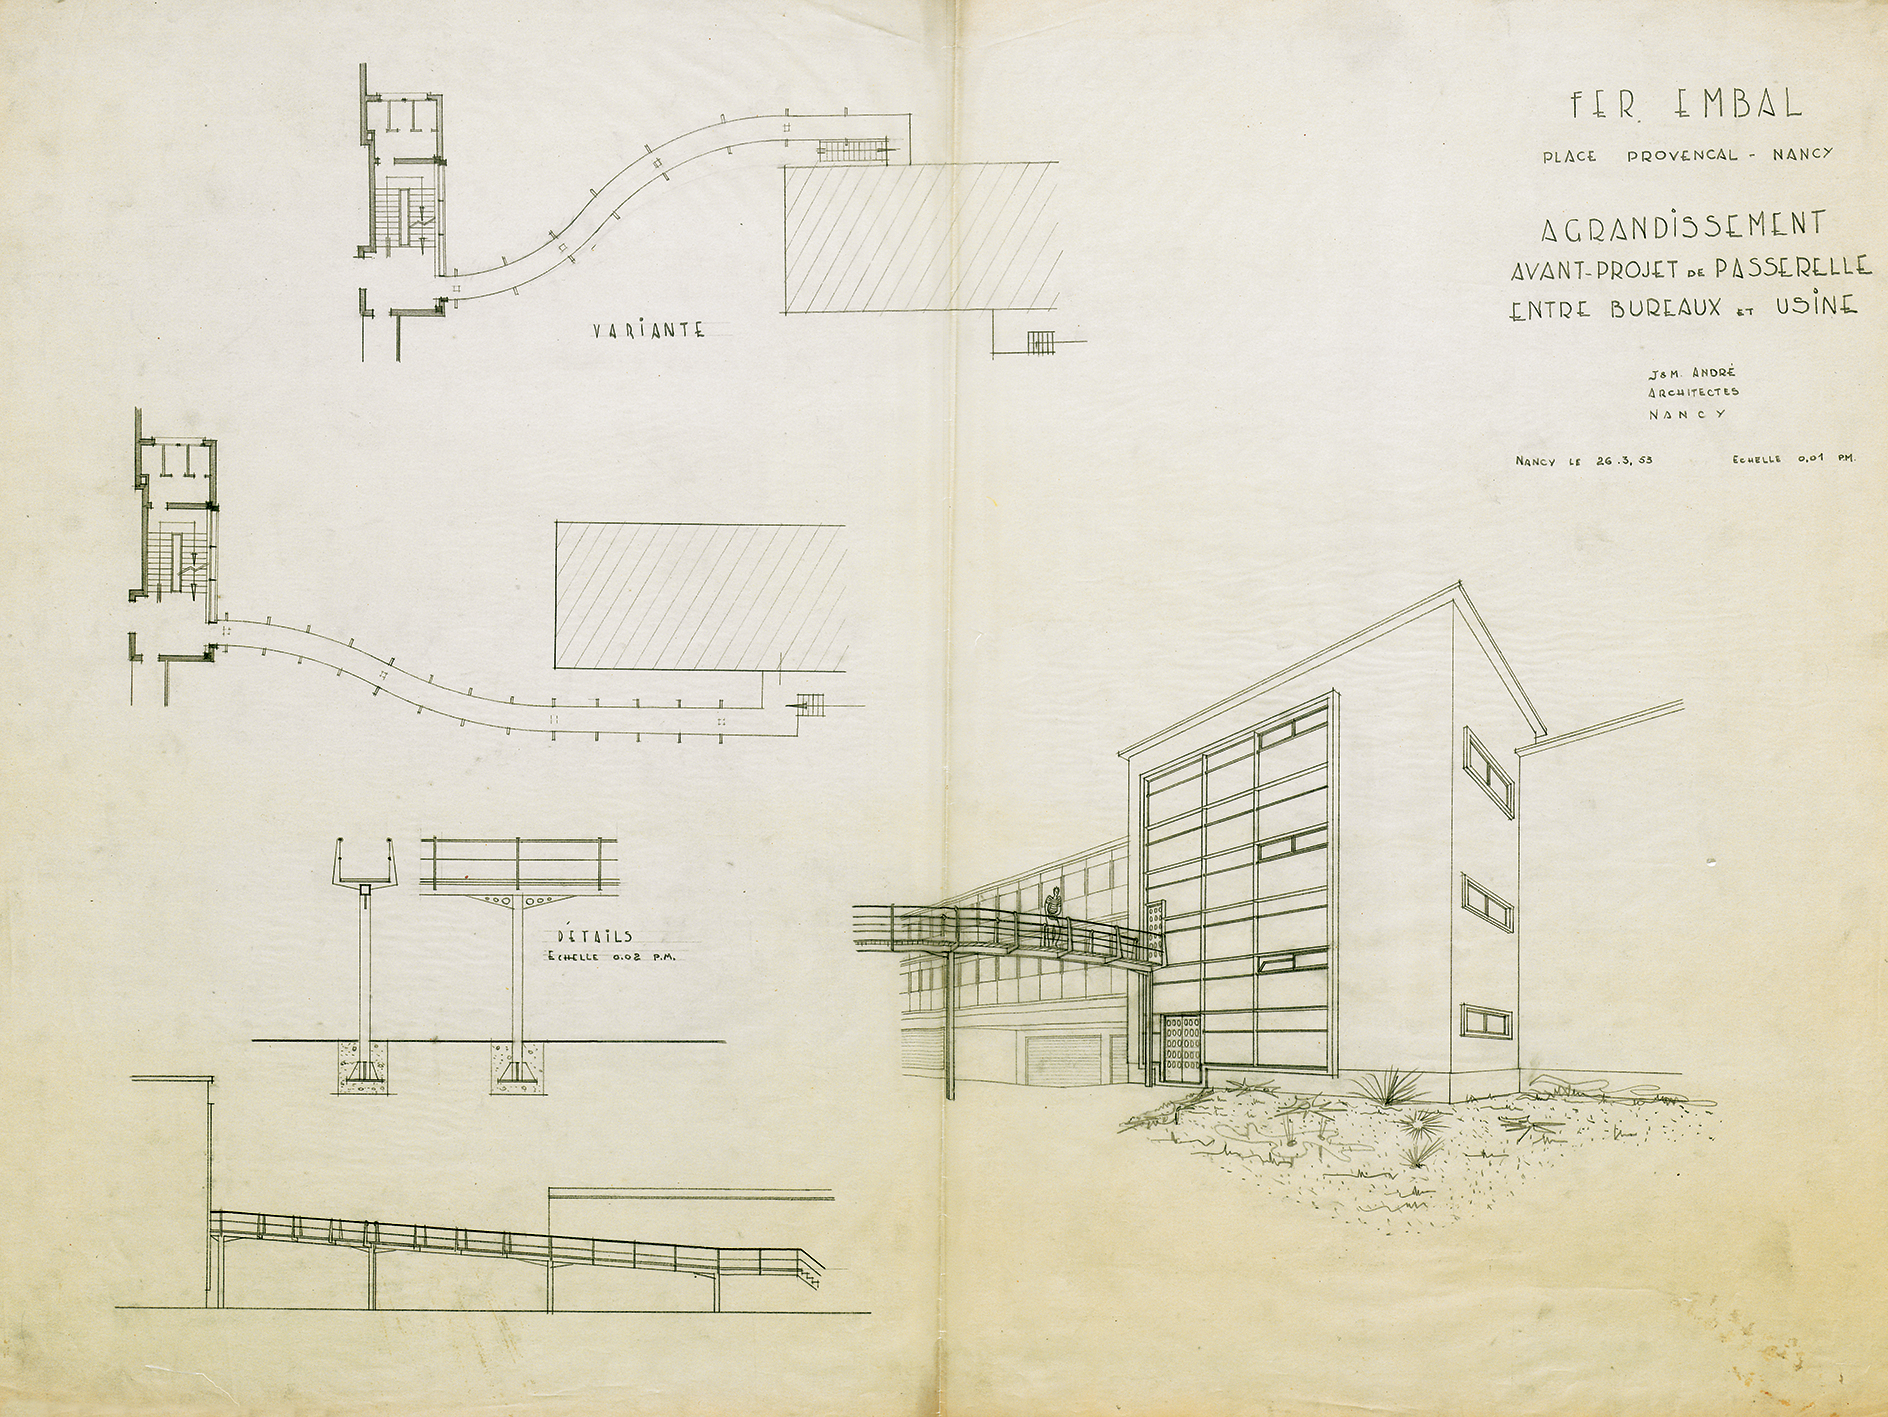 Usine Ferembal, Nancy. Projet d’agrandissement des ateliers et d’une passerelle entre les bureaux et l’usine, 1952 (J. et M. André, arch).